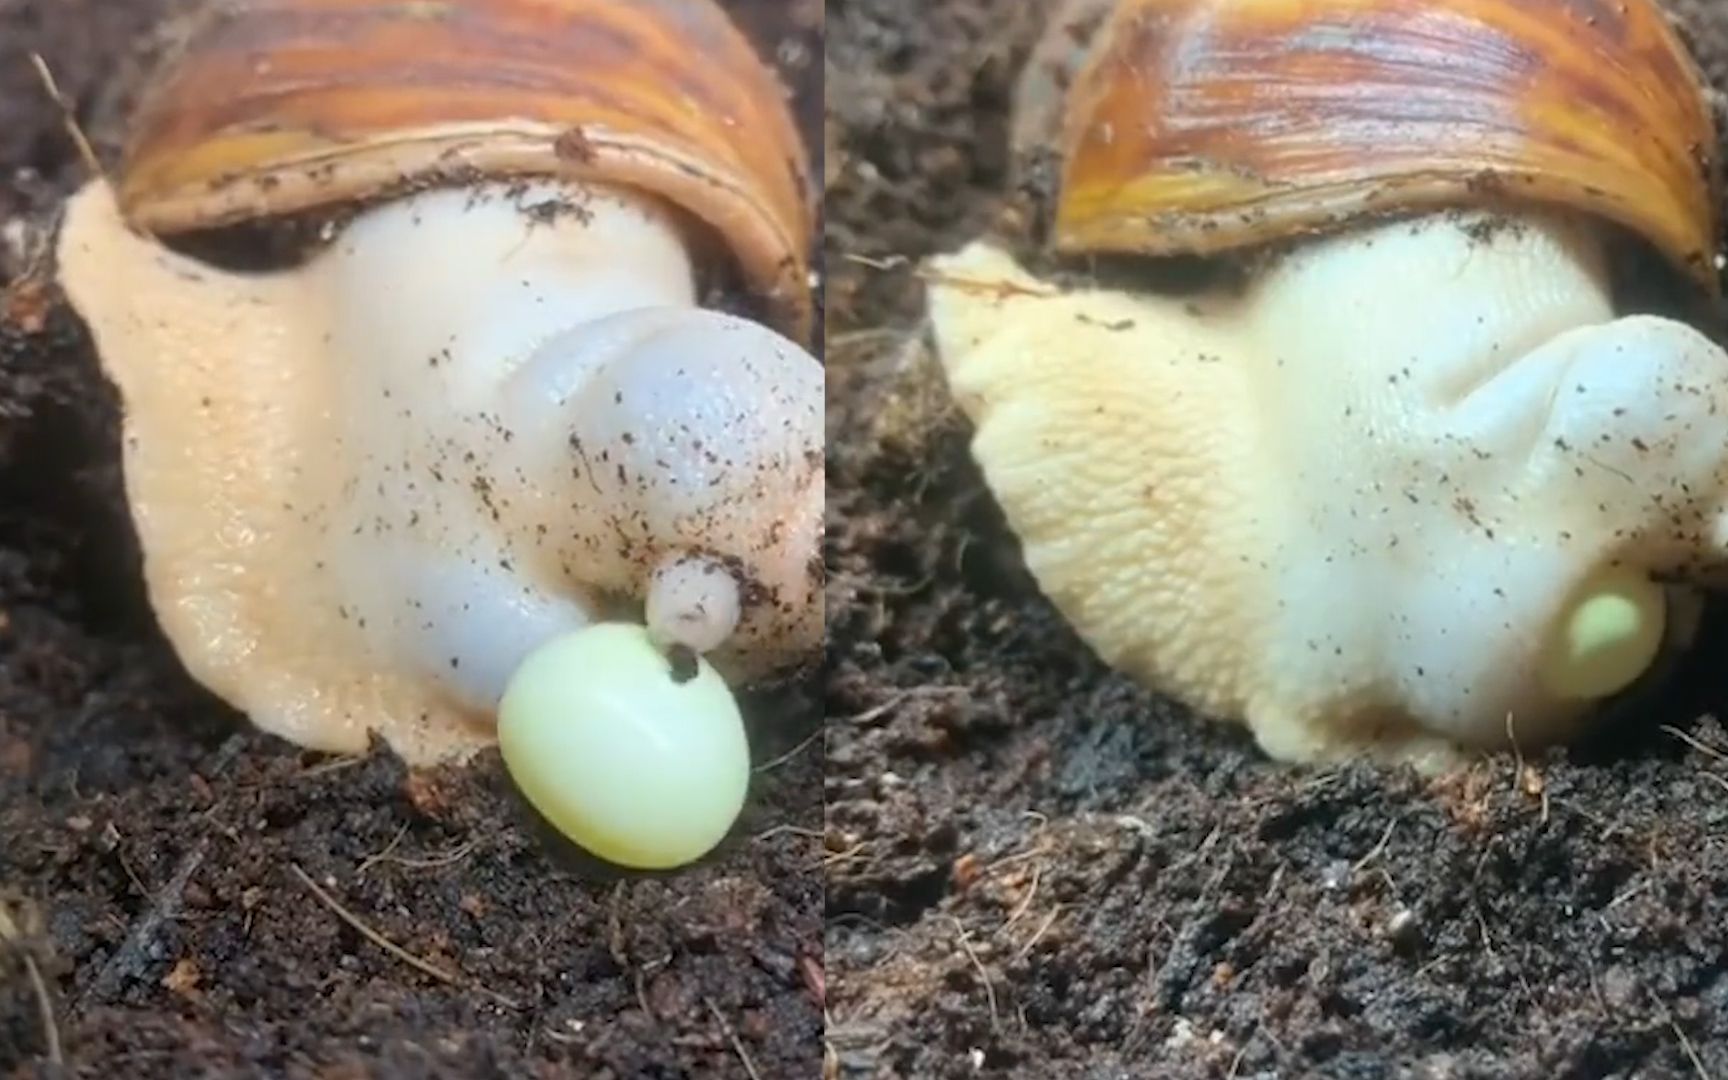 蜗牛刚出生的样子图片